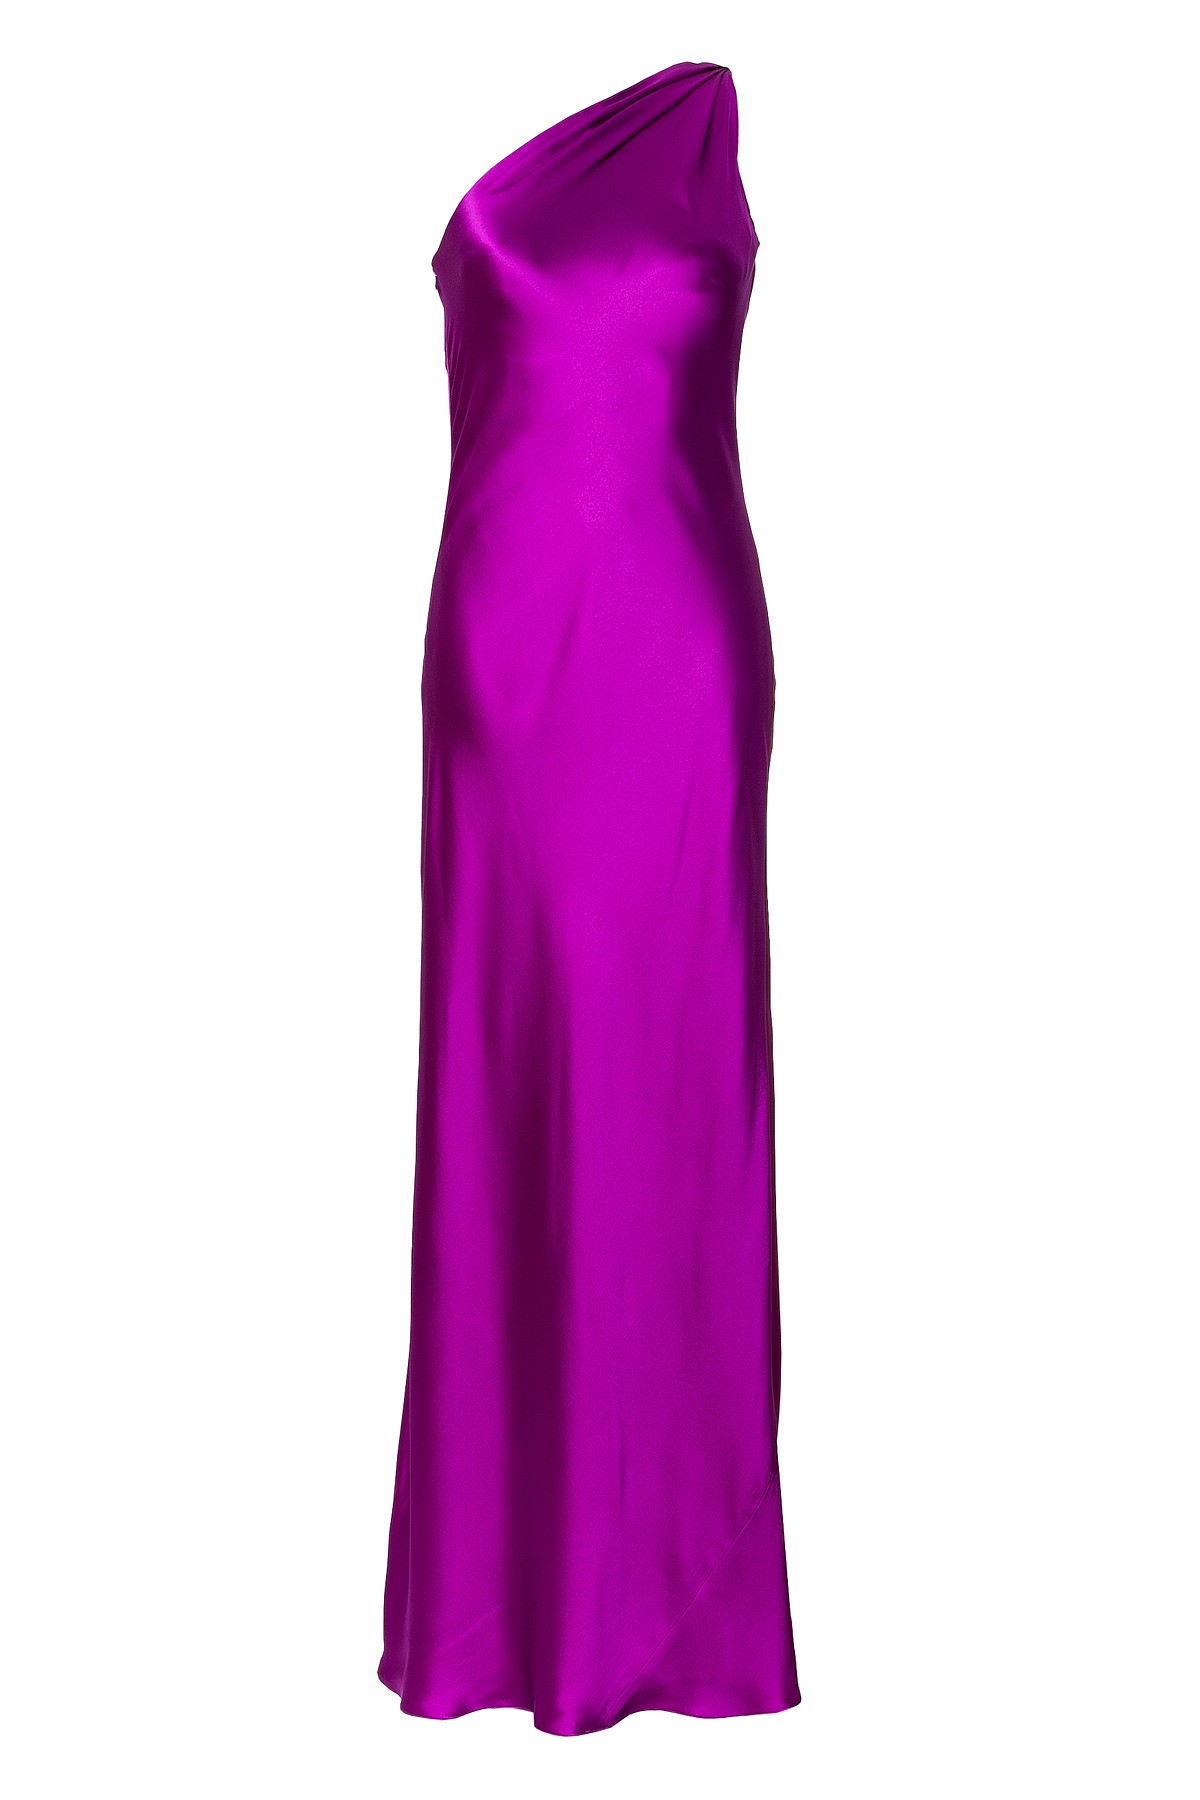 Lyst - Ralph Lauren Collection Fuchsia Silk Satin Julien Evening Gown ...